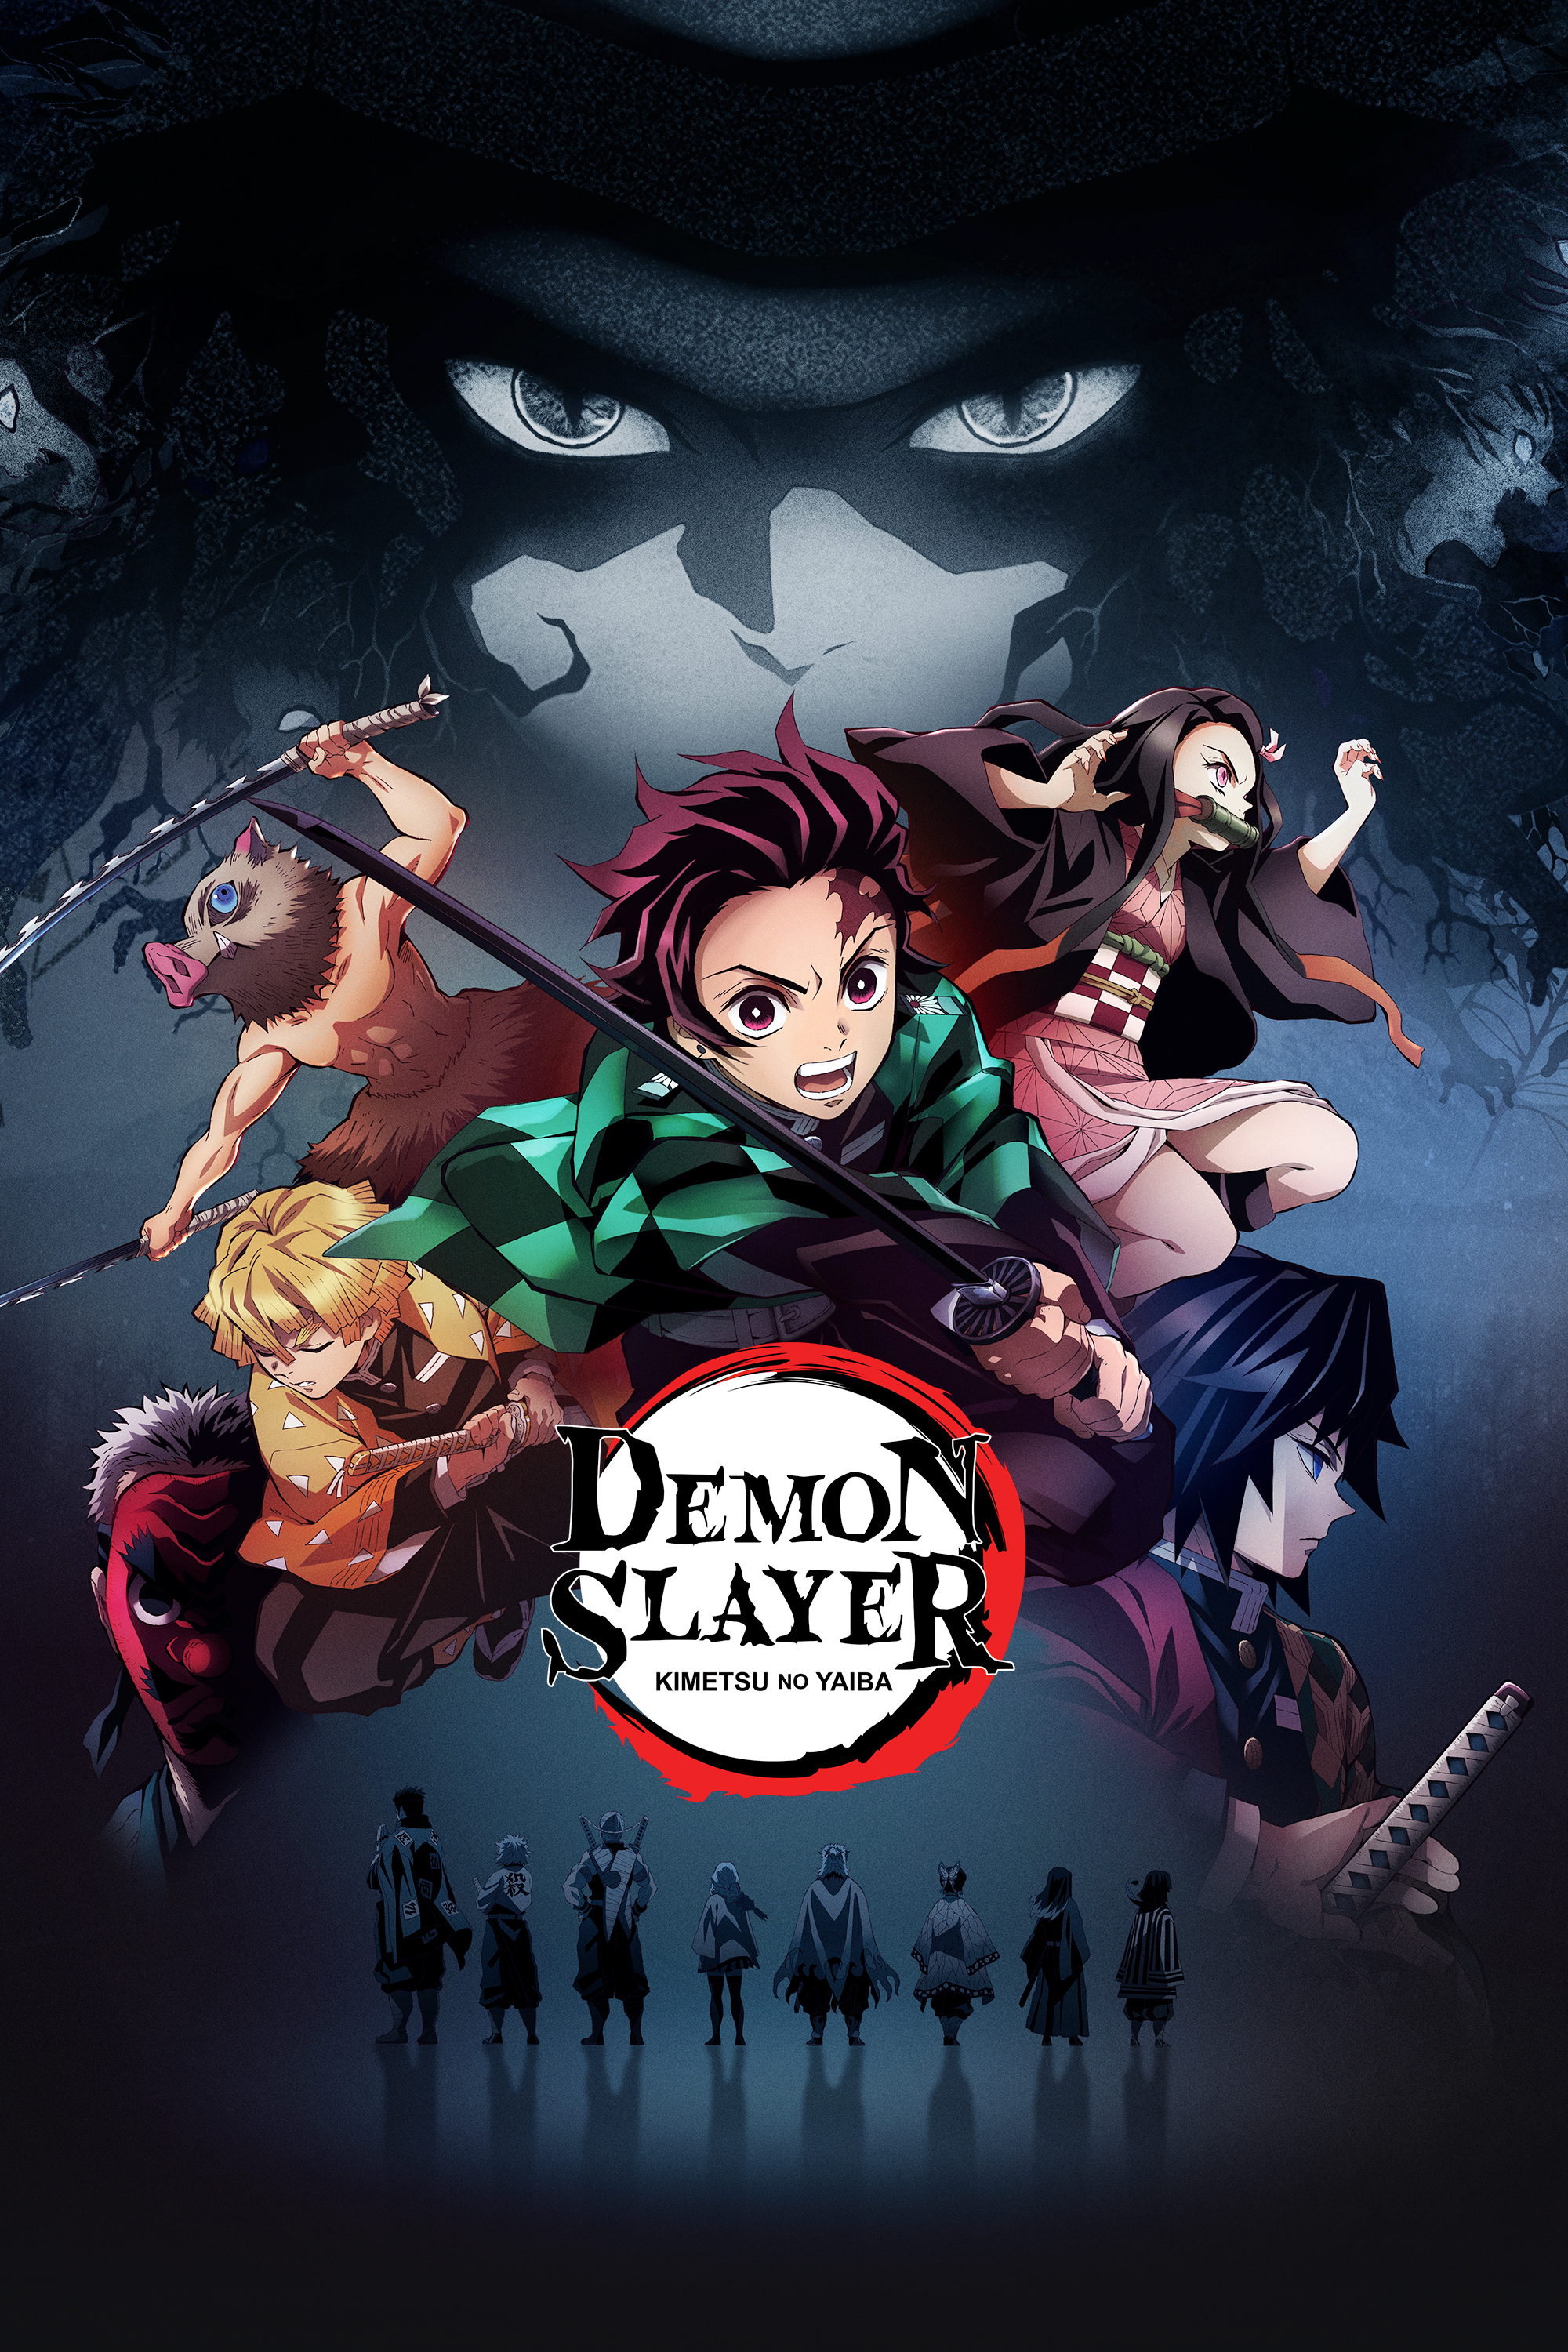 Watch Demon Slayer Kimetsu No Yaiba Sub Action Adventure Fantasy Shounen Anime Funimation